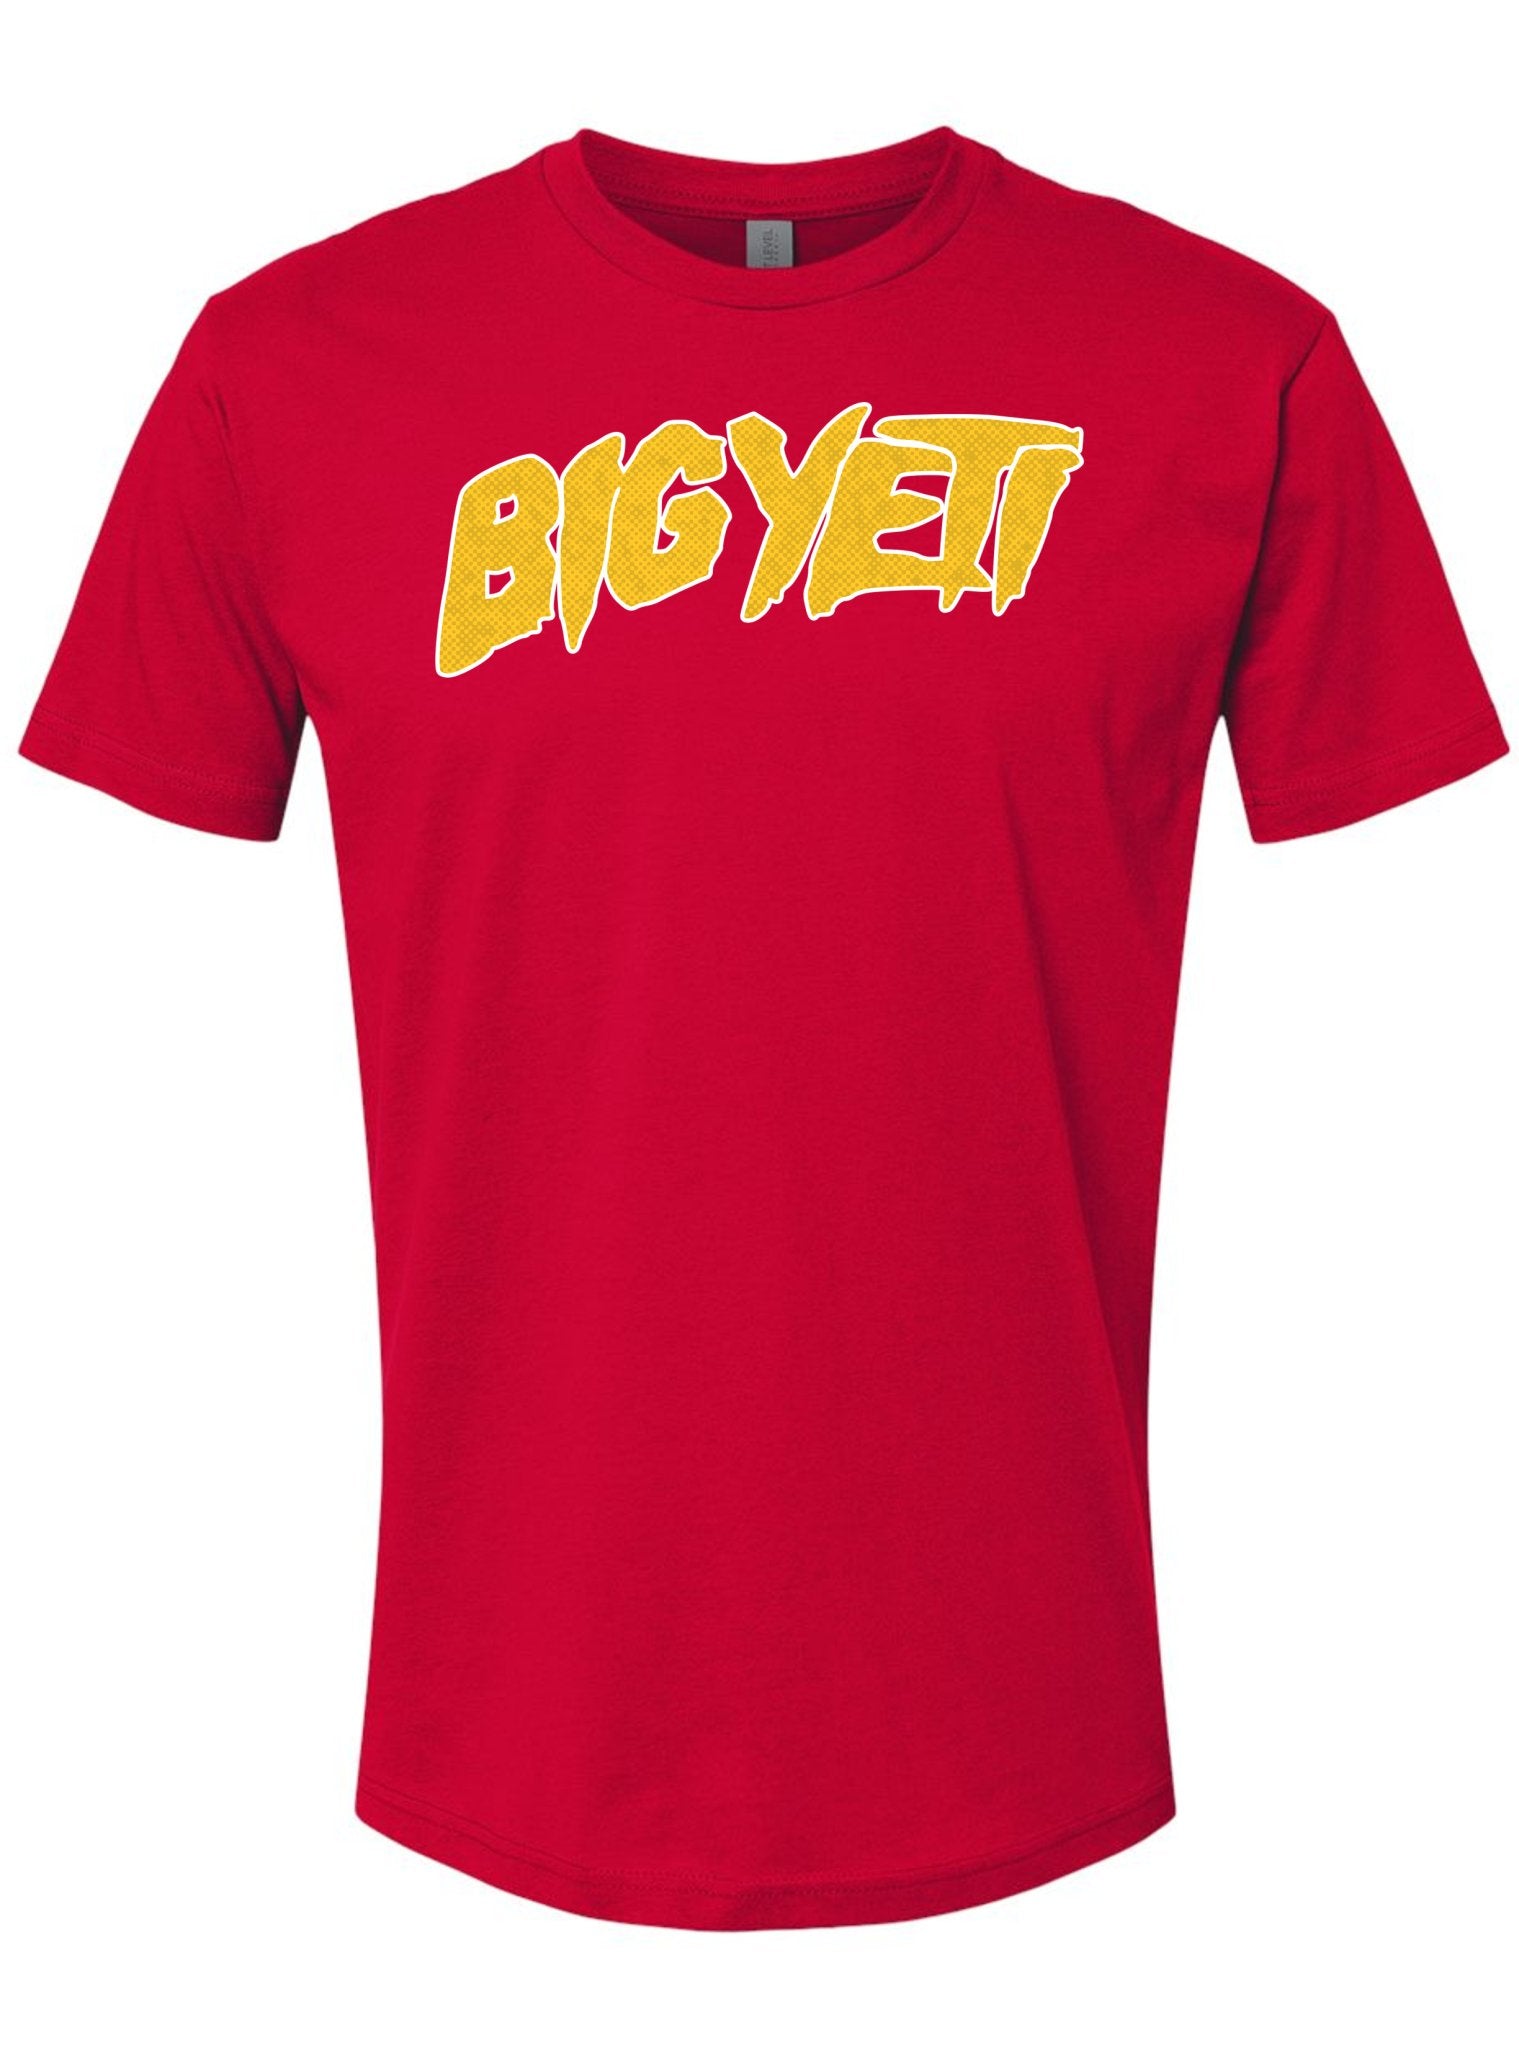 Kansas City Red Big Yeti T-Shirt -